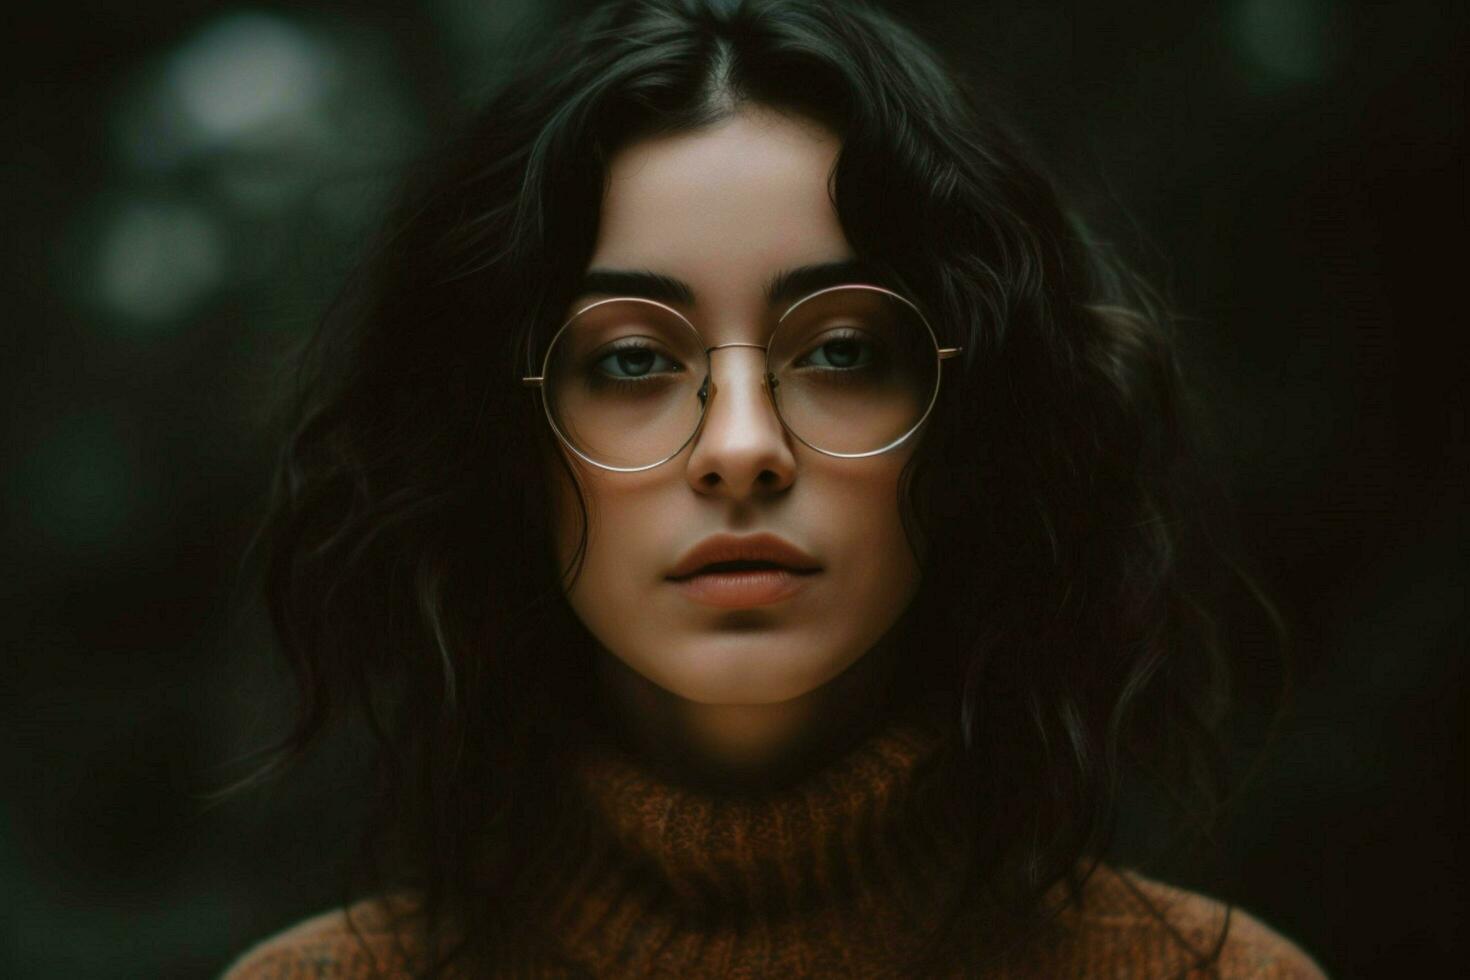 une portrait de une femme avec des lunettes sur sa visage photo